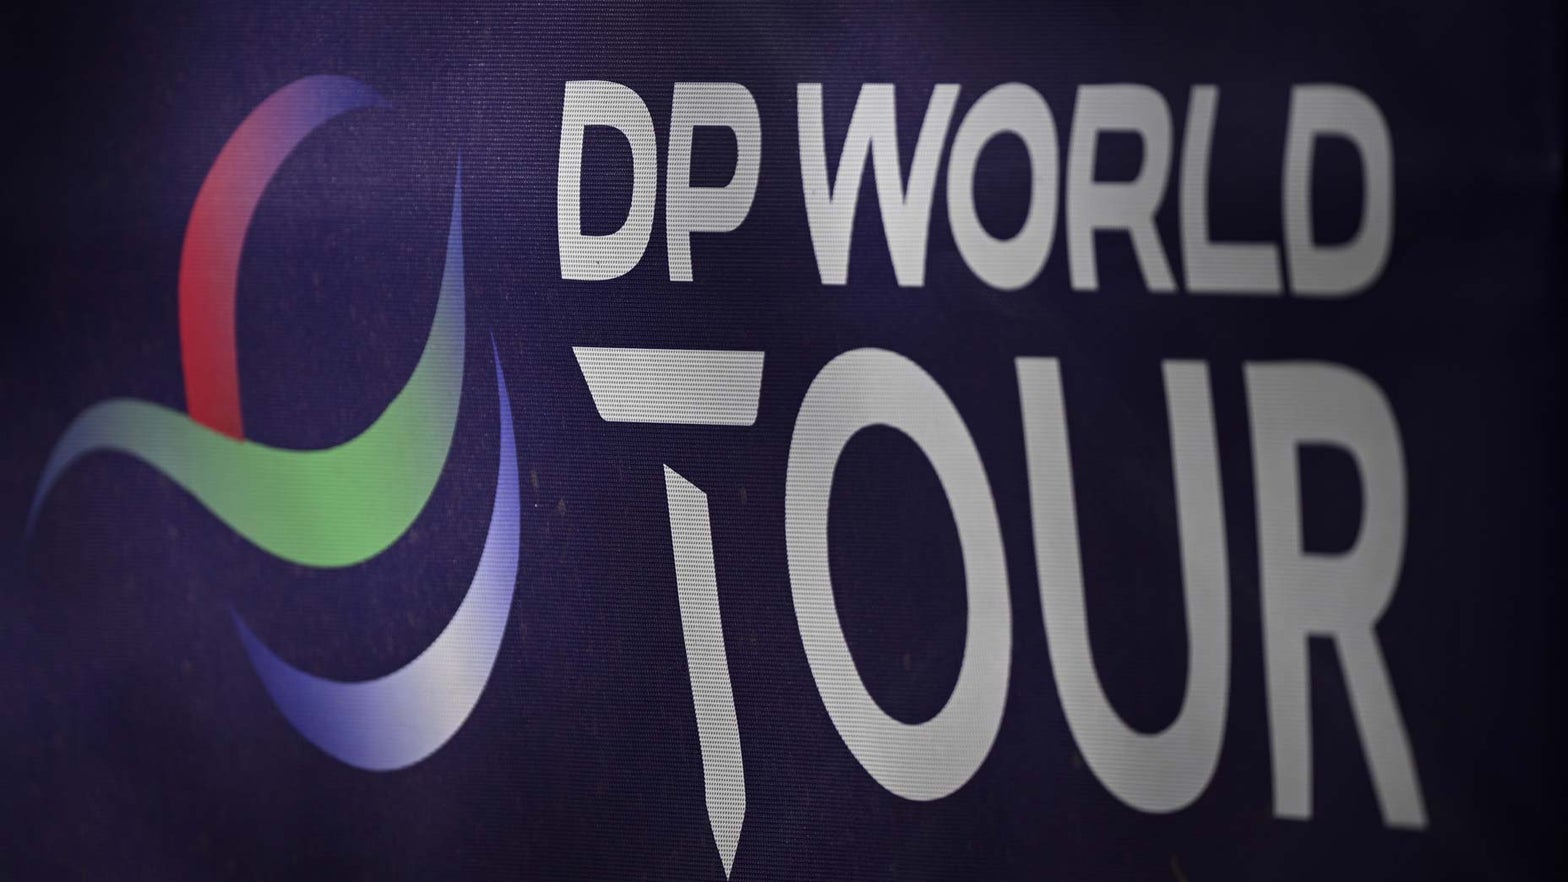 dp world tour